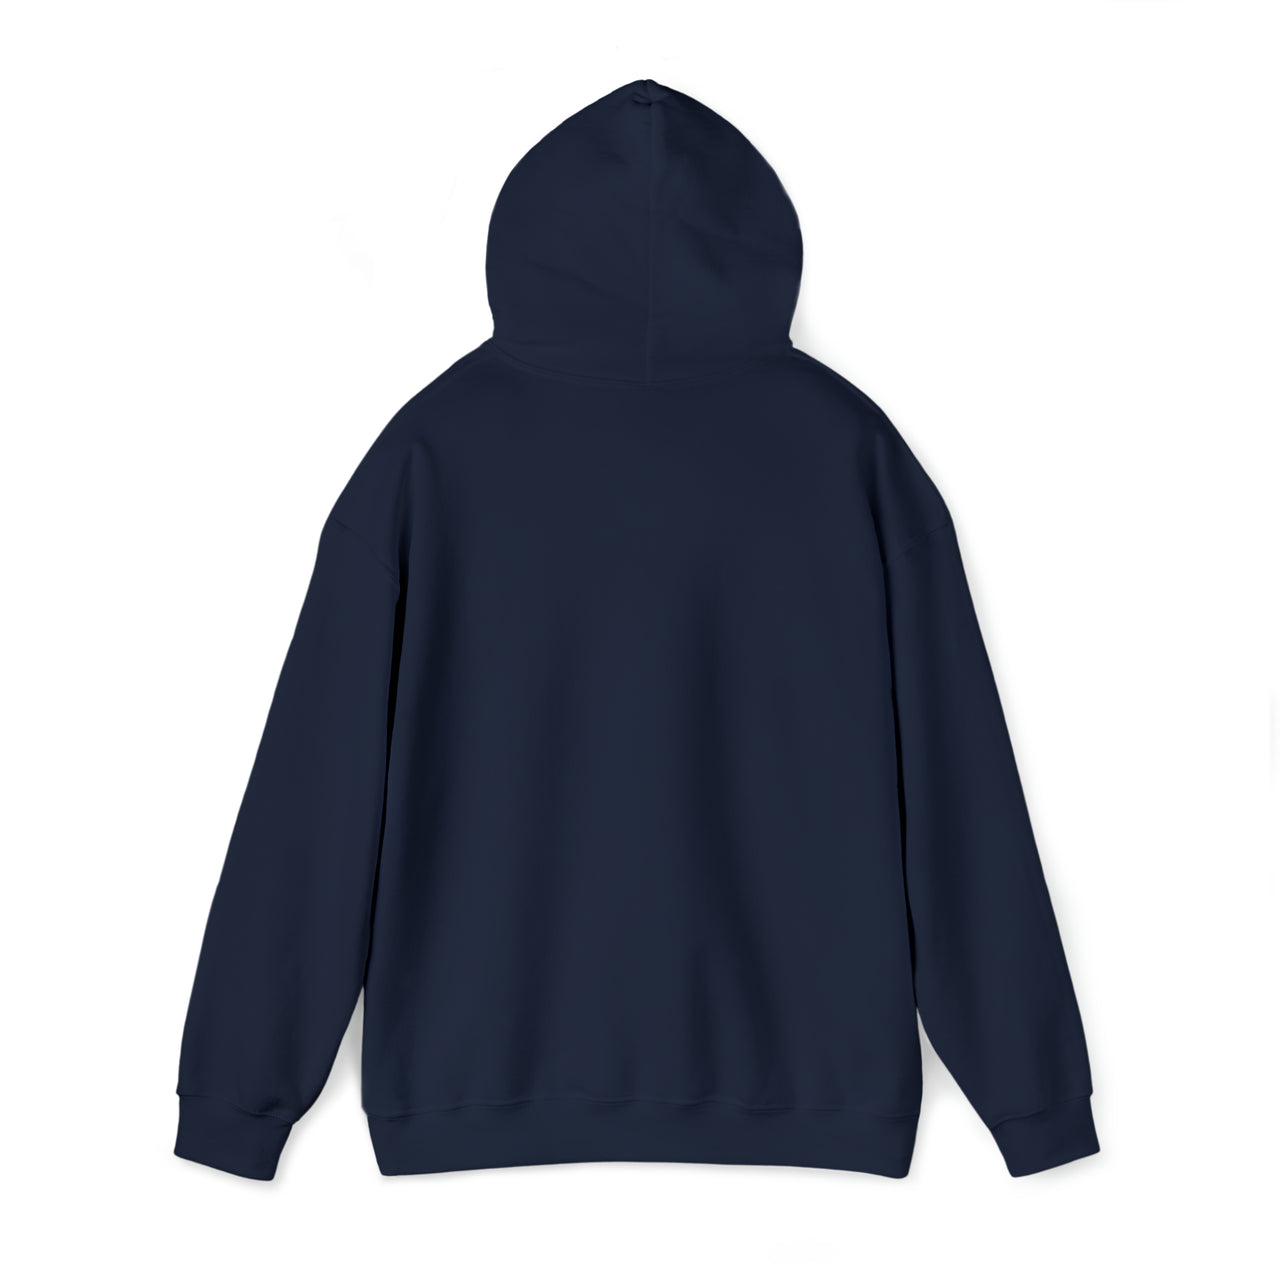 It's In My DNA - Unisex Heavy Blend™ Hooded Sweatshirt